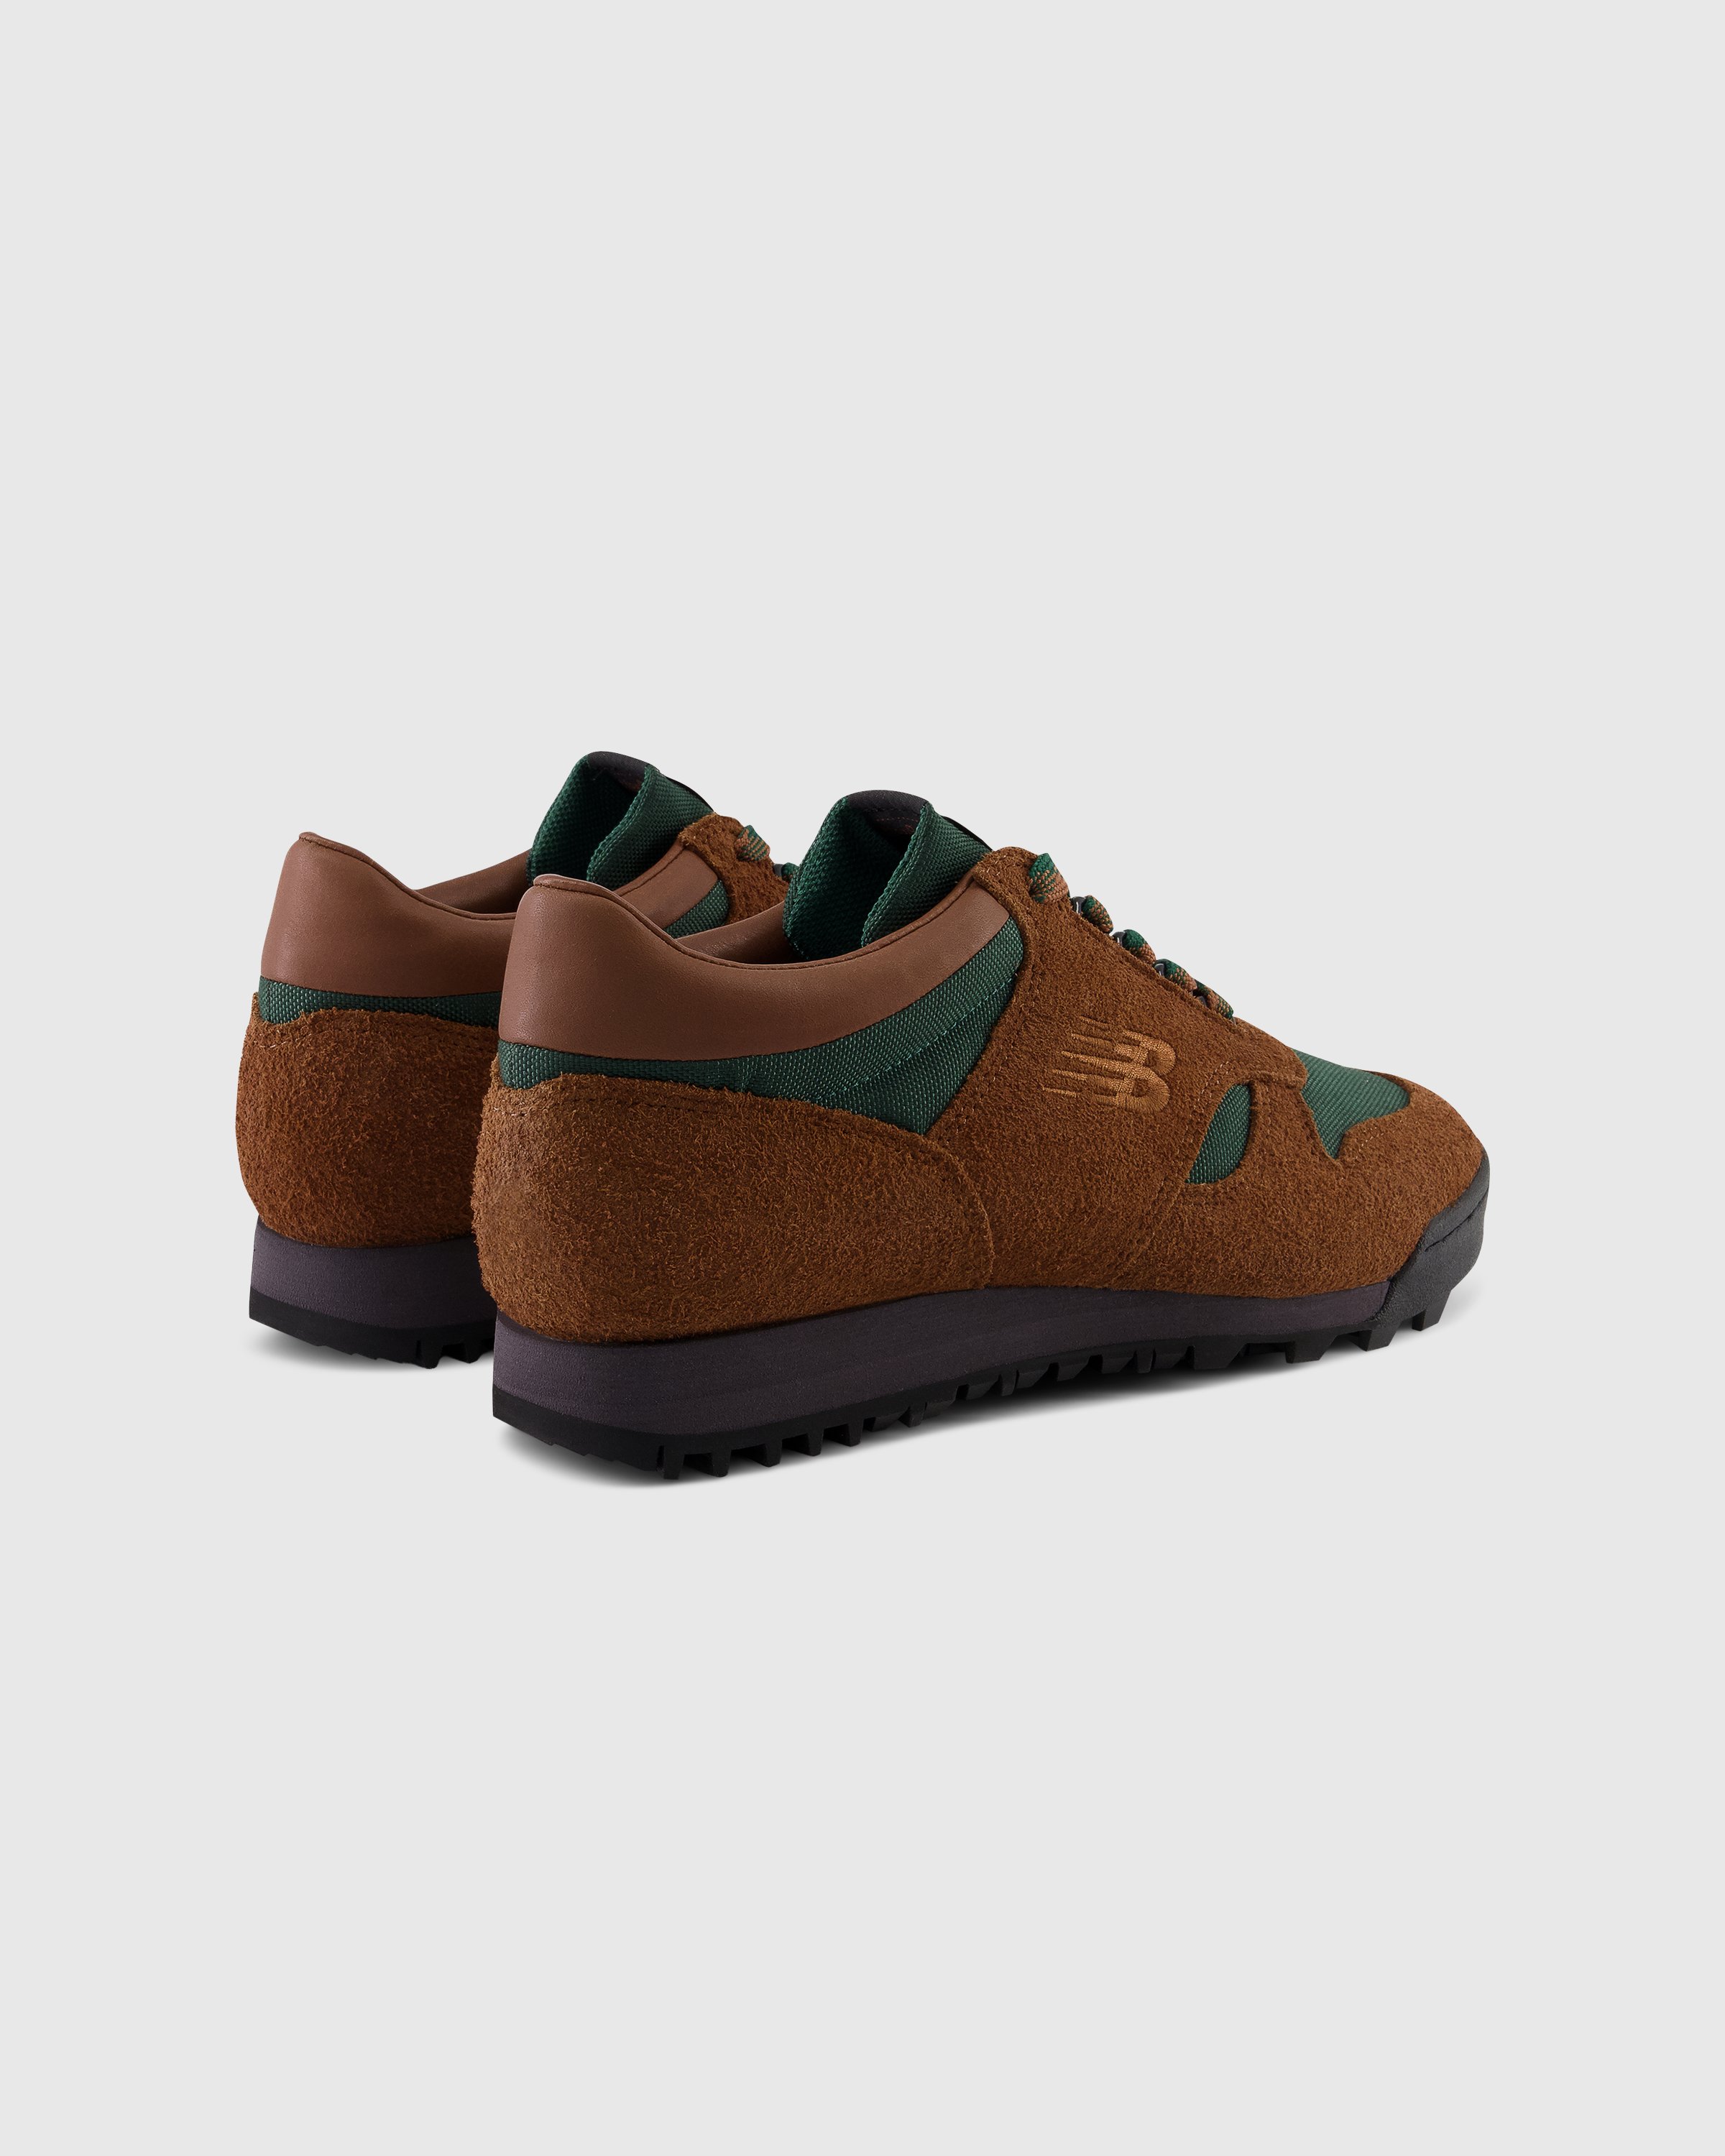 New Balance - UALGSBG True Brown - Footwear - Brown - Image 4